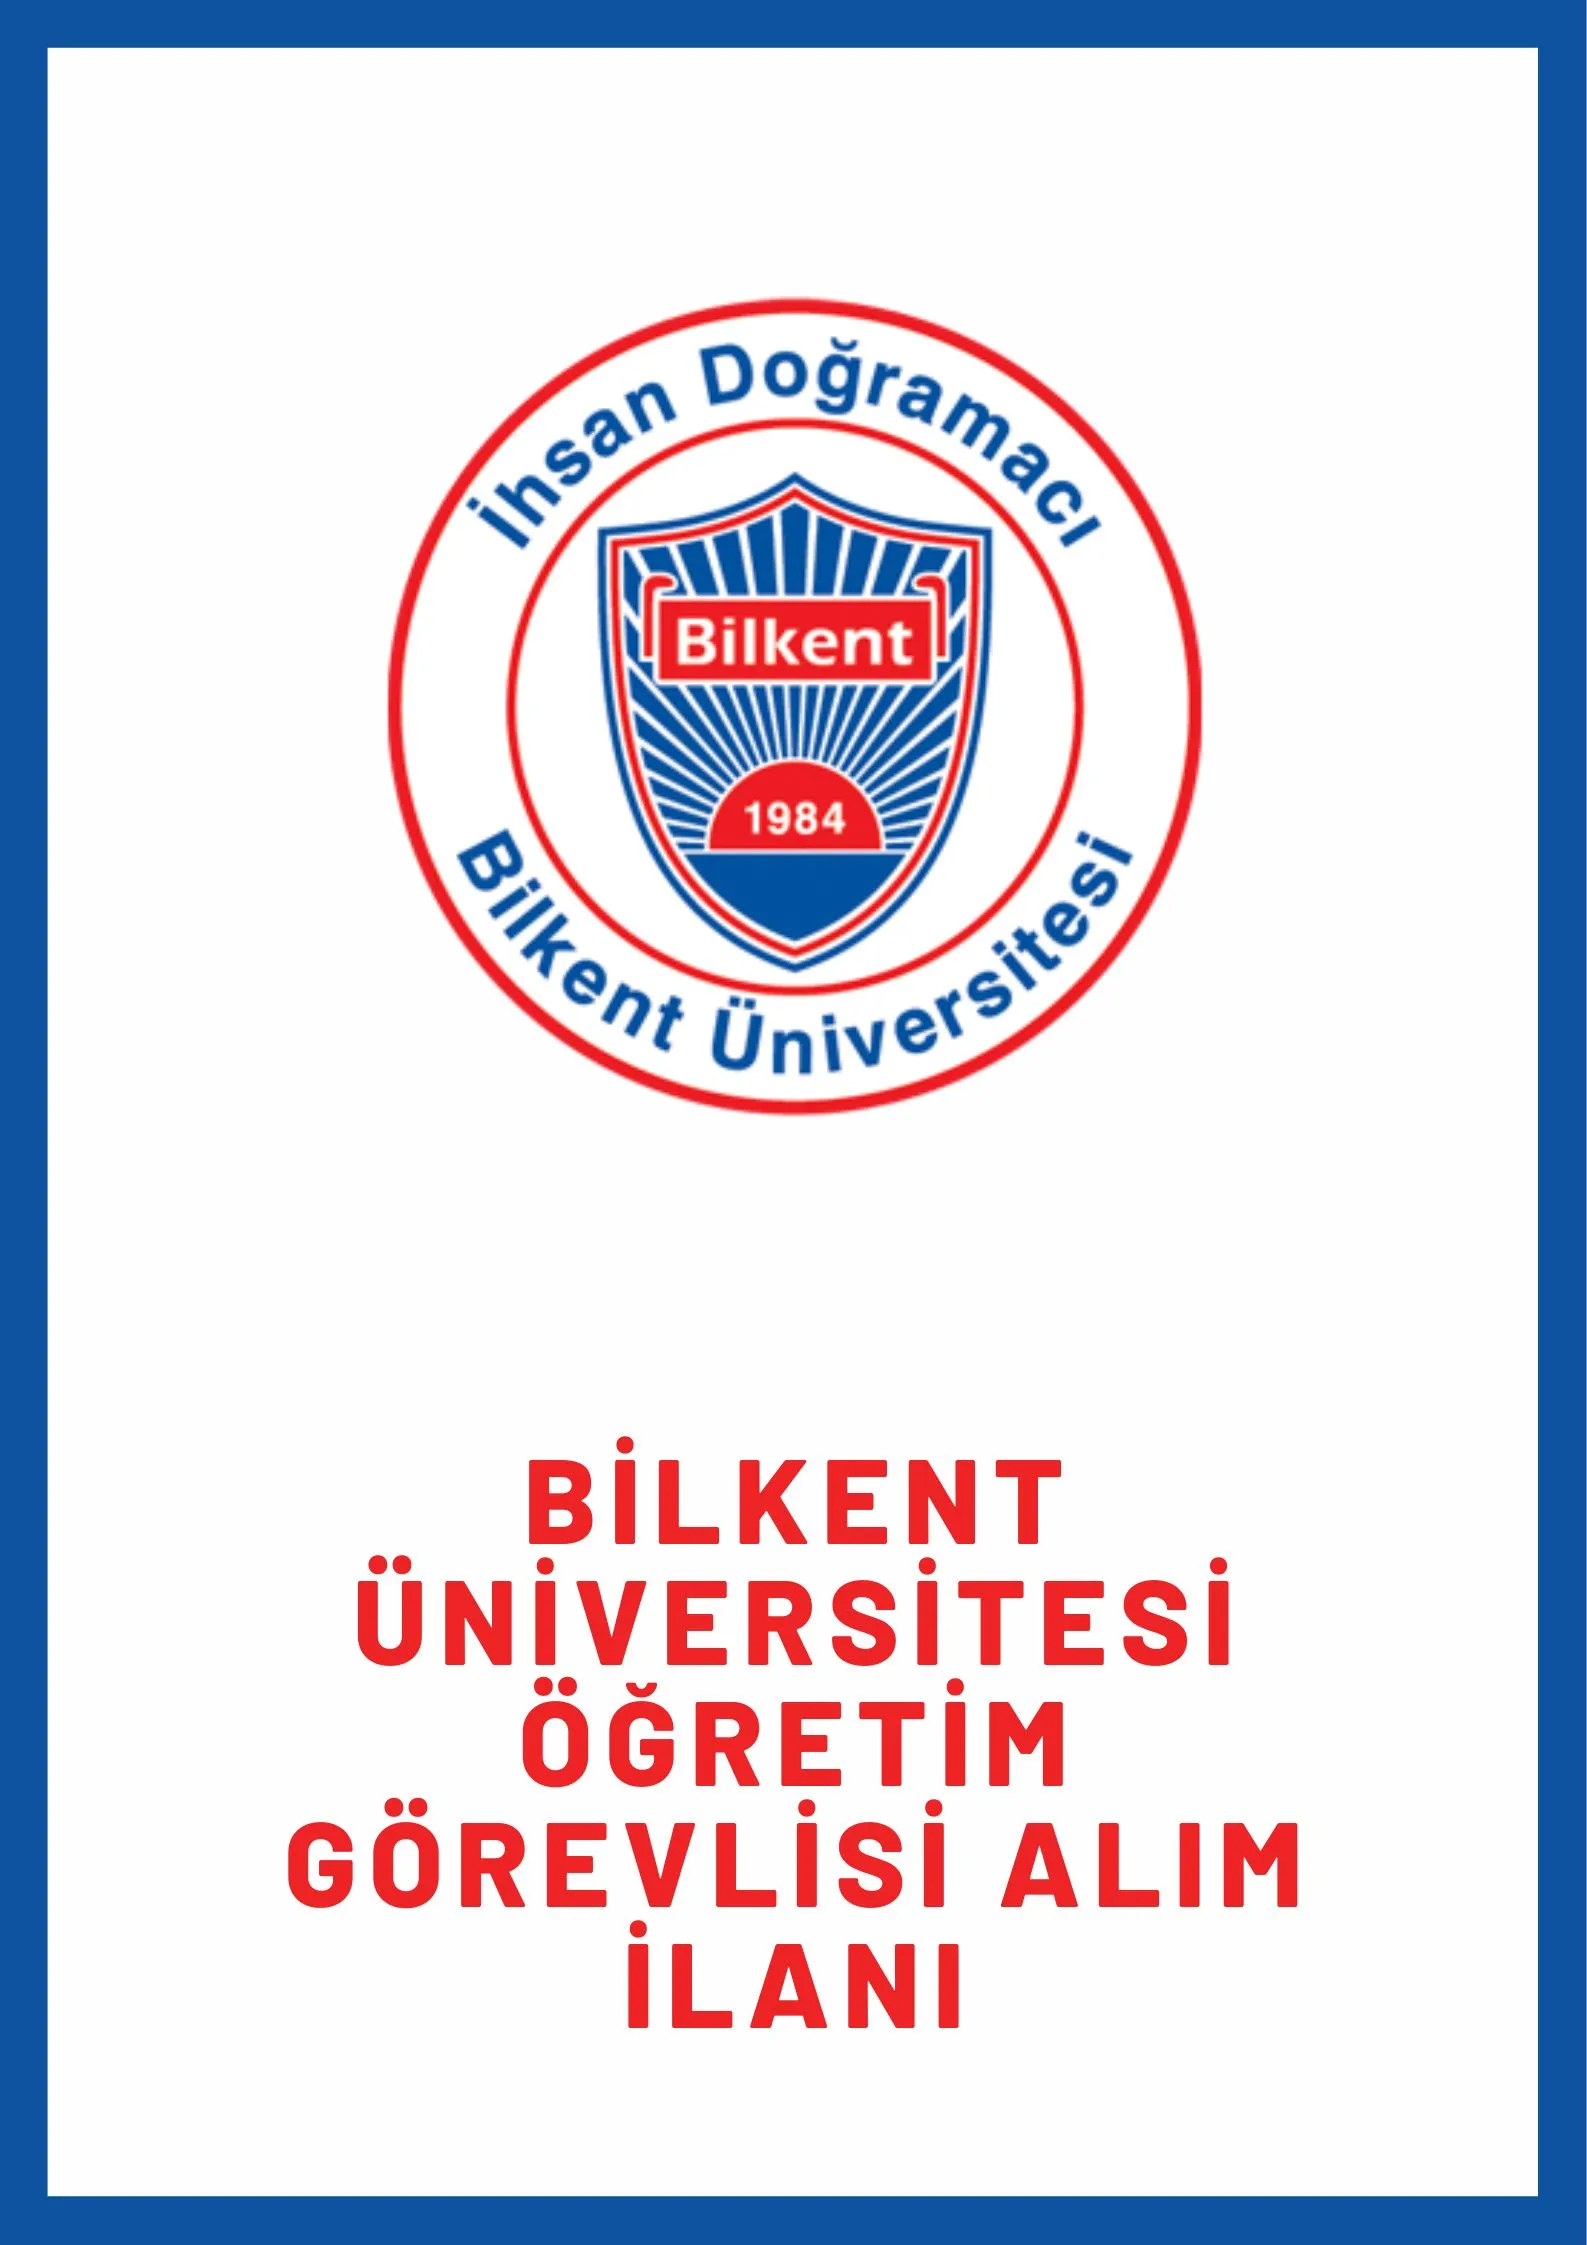 İhsan Doğramacı Bilkent Üniversitesi Öğretim görevlisi alacak. Son başvuru tarihi 29 Ağustos 2022.